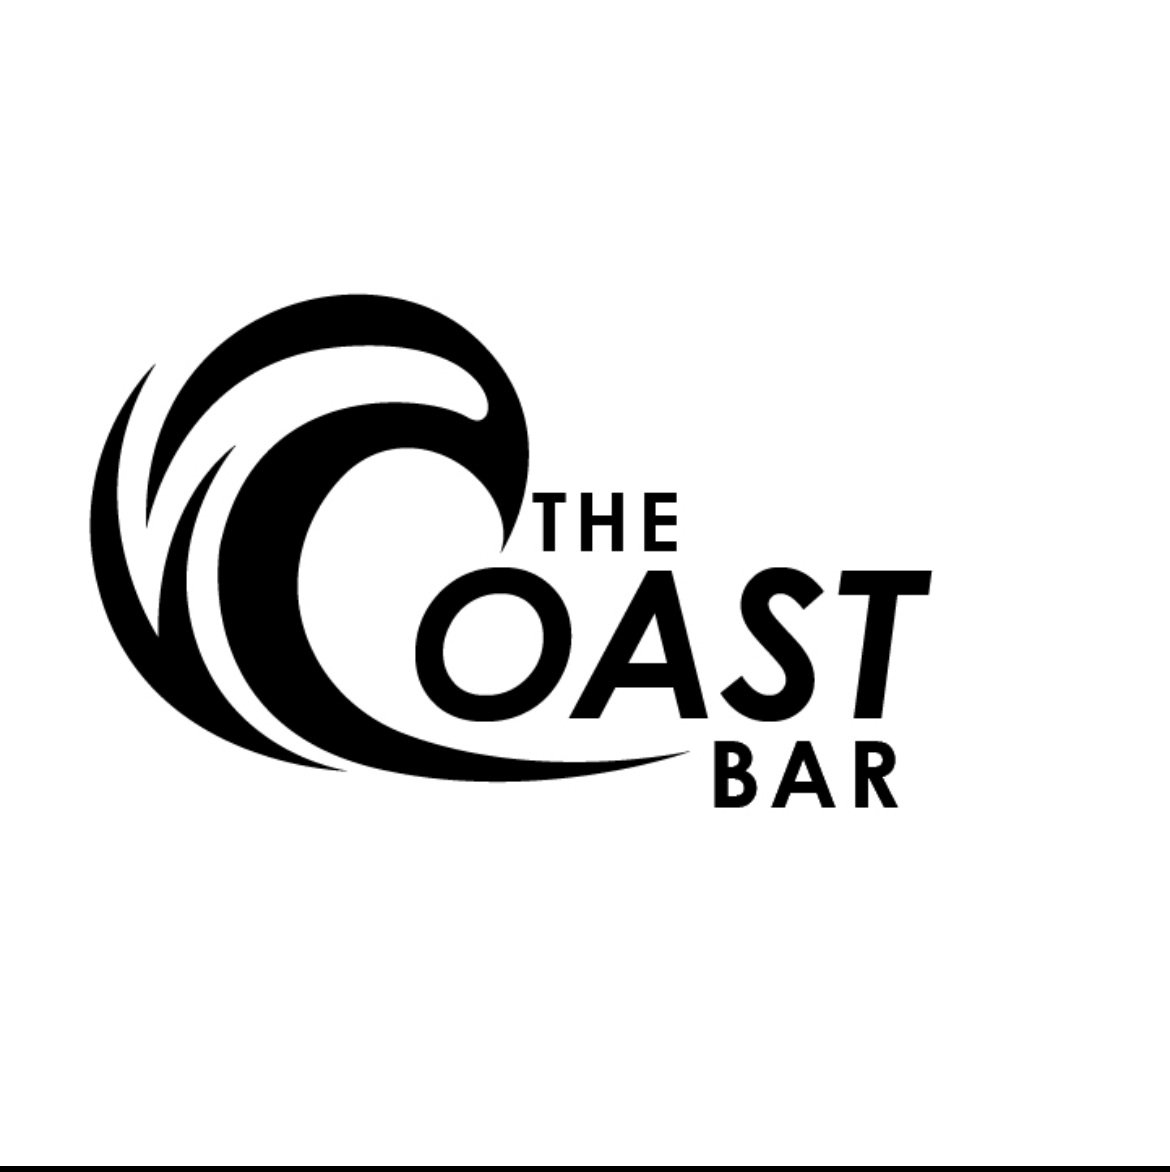 The Coast Bar